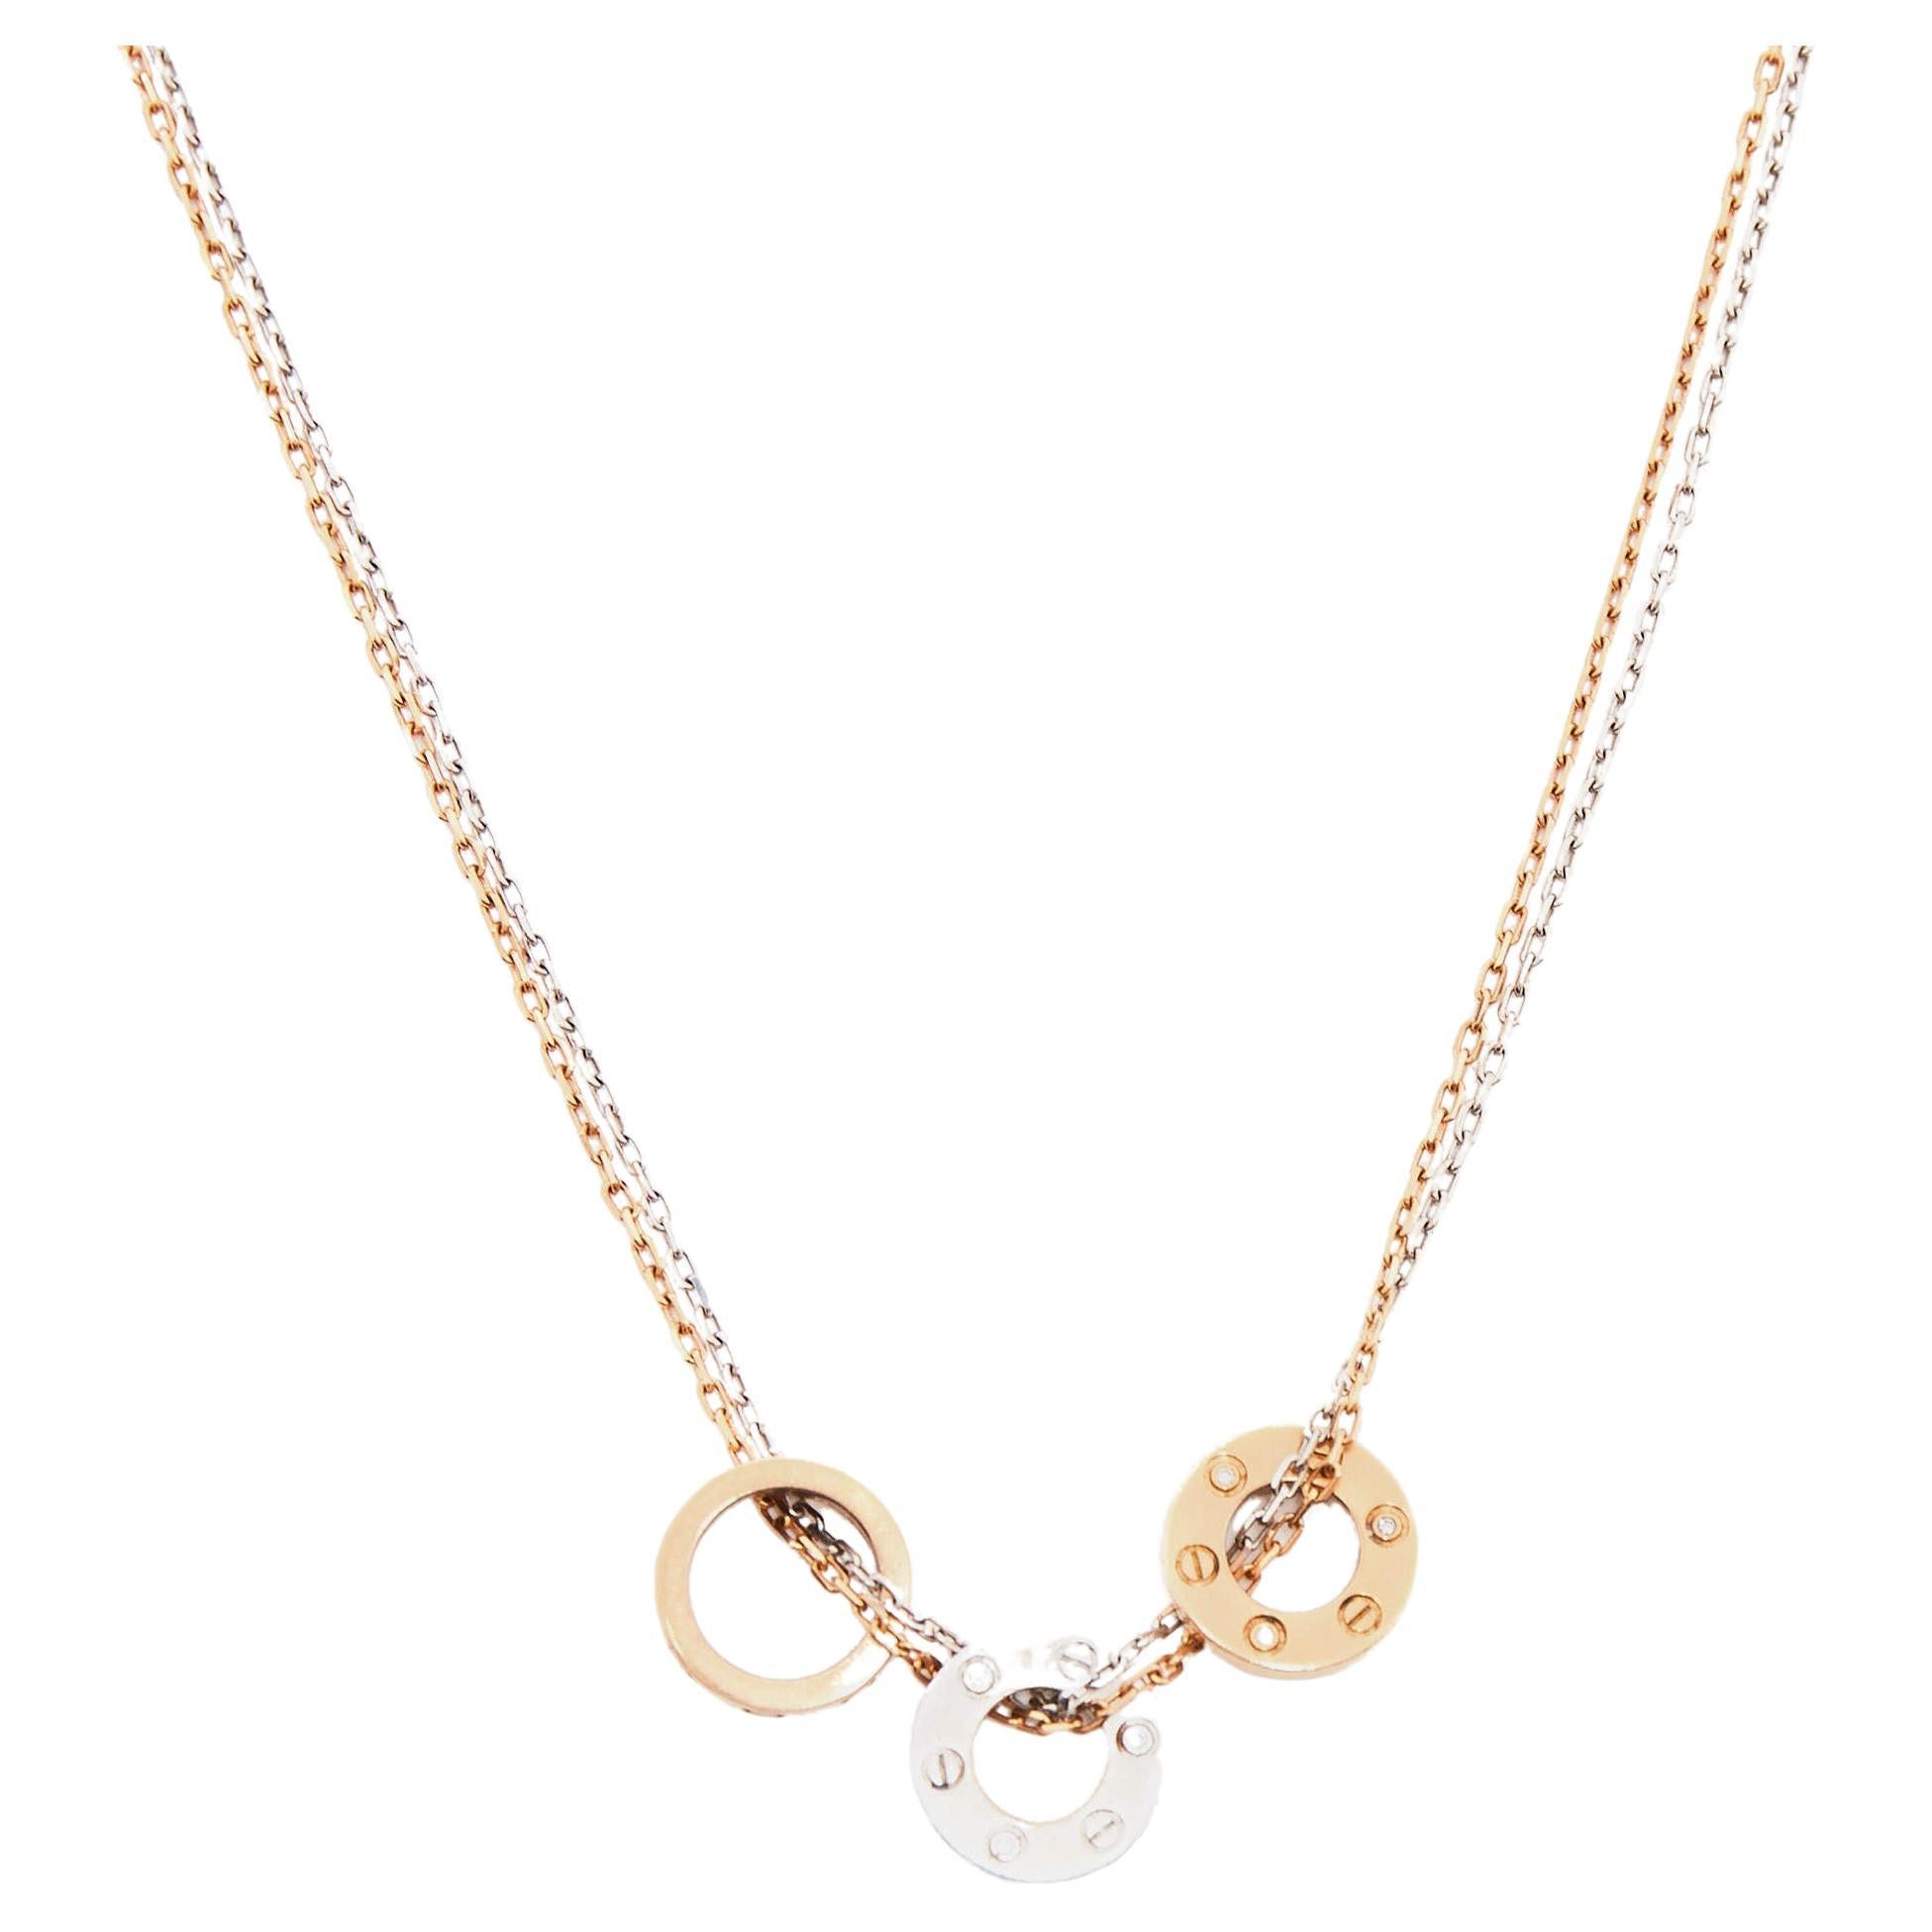 Le collier Love de Cartier est un bijou luxueux et élégant. Réalisée en or 18 carats, elle présente un design à double chaîne qui apporte une touche de modernité. Le collier est orné de diamants étincelants, ajoutant un élément éblouissant et